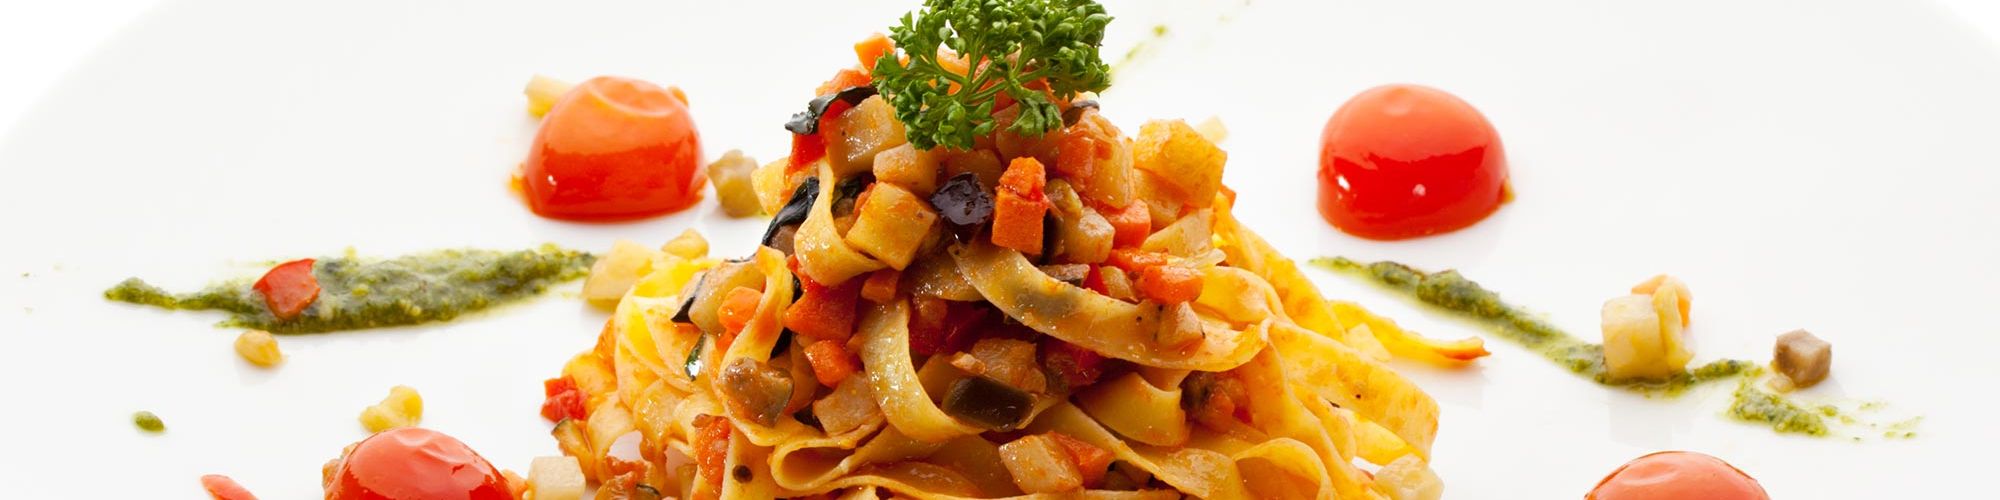 ricetta Tagliatelle vegetariane con pesto di rucola e pomodorini al forno con pasta fresca